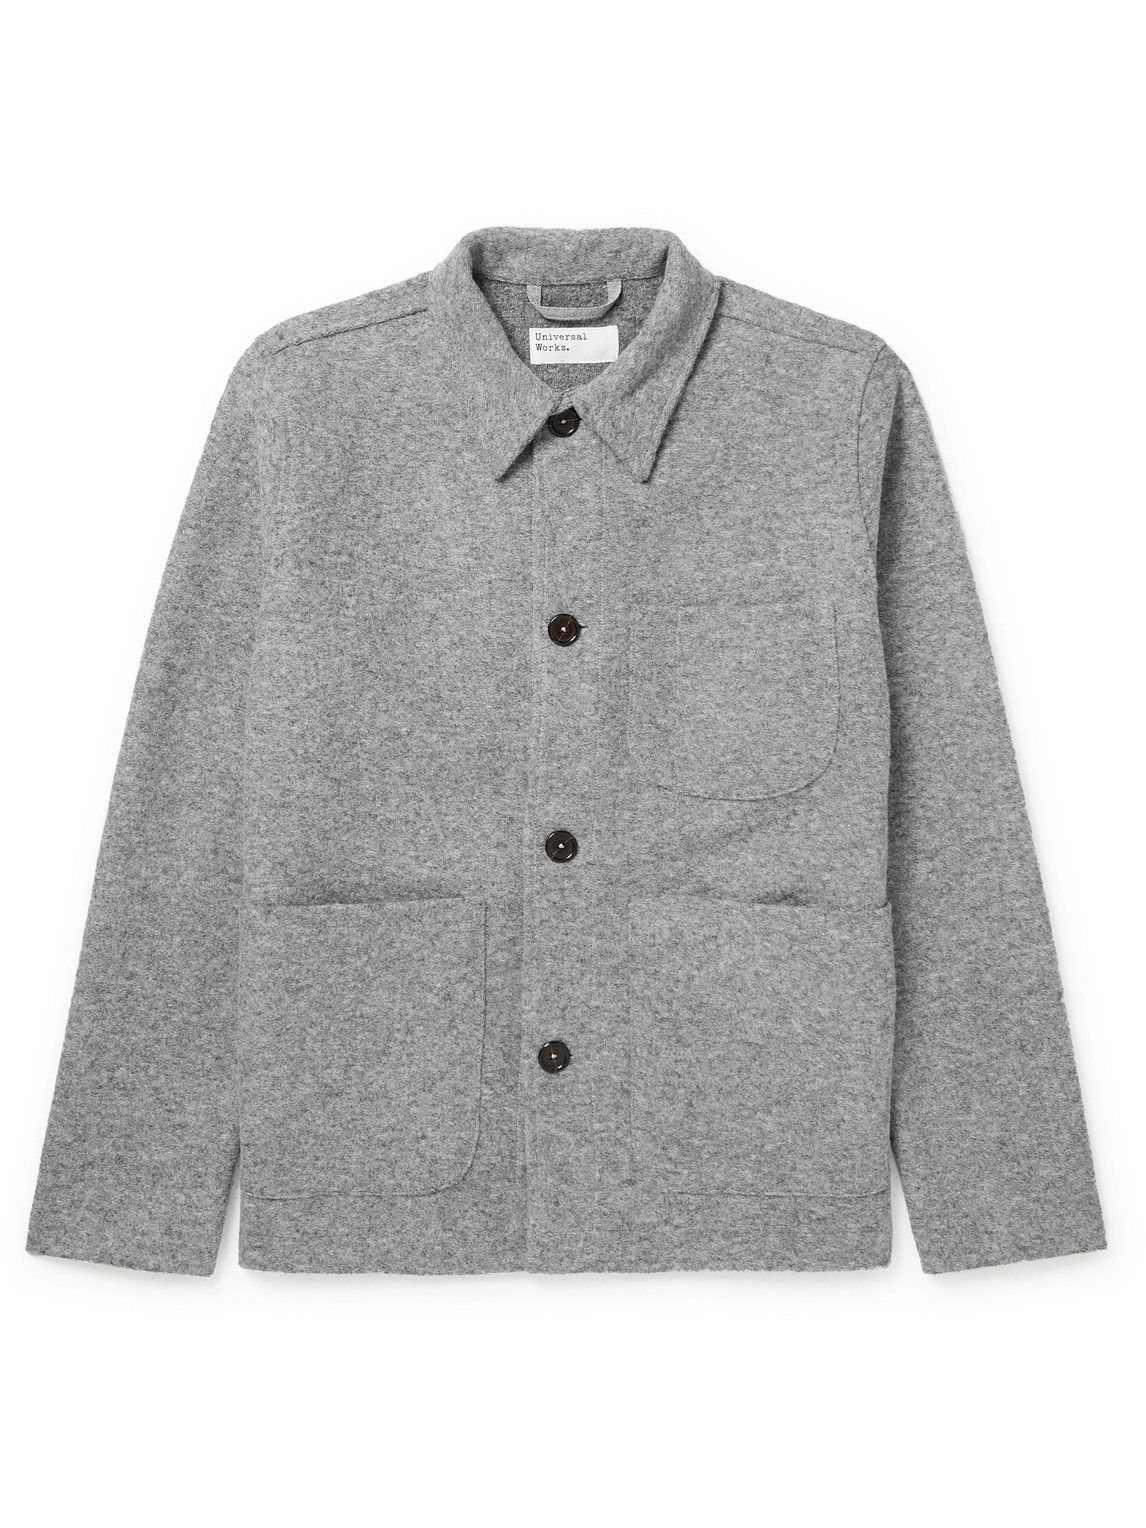 Universal Works - Wool-Blend Fleece Field Jacket - Gray Universal Works